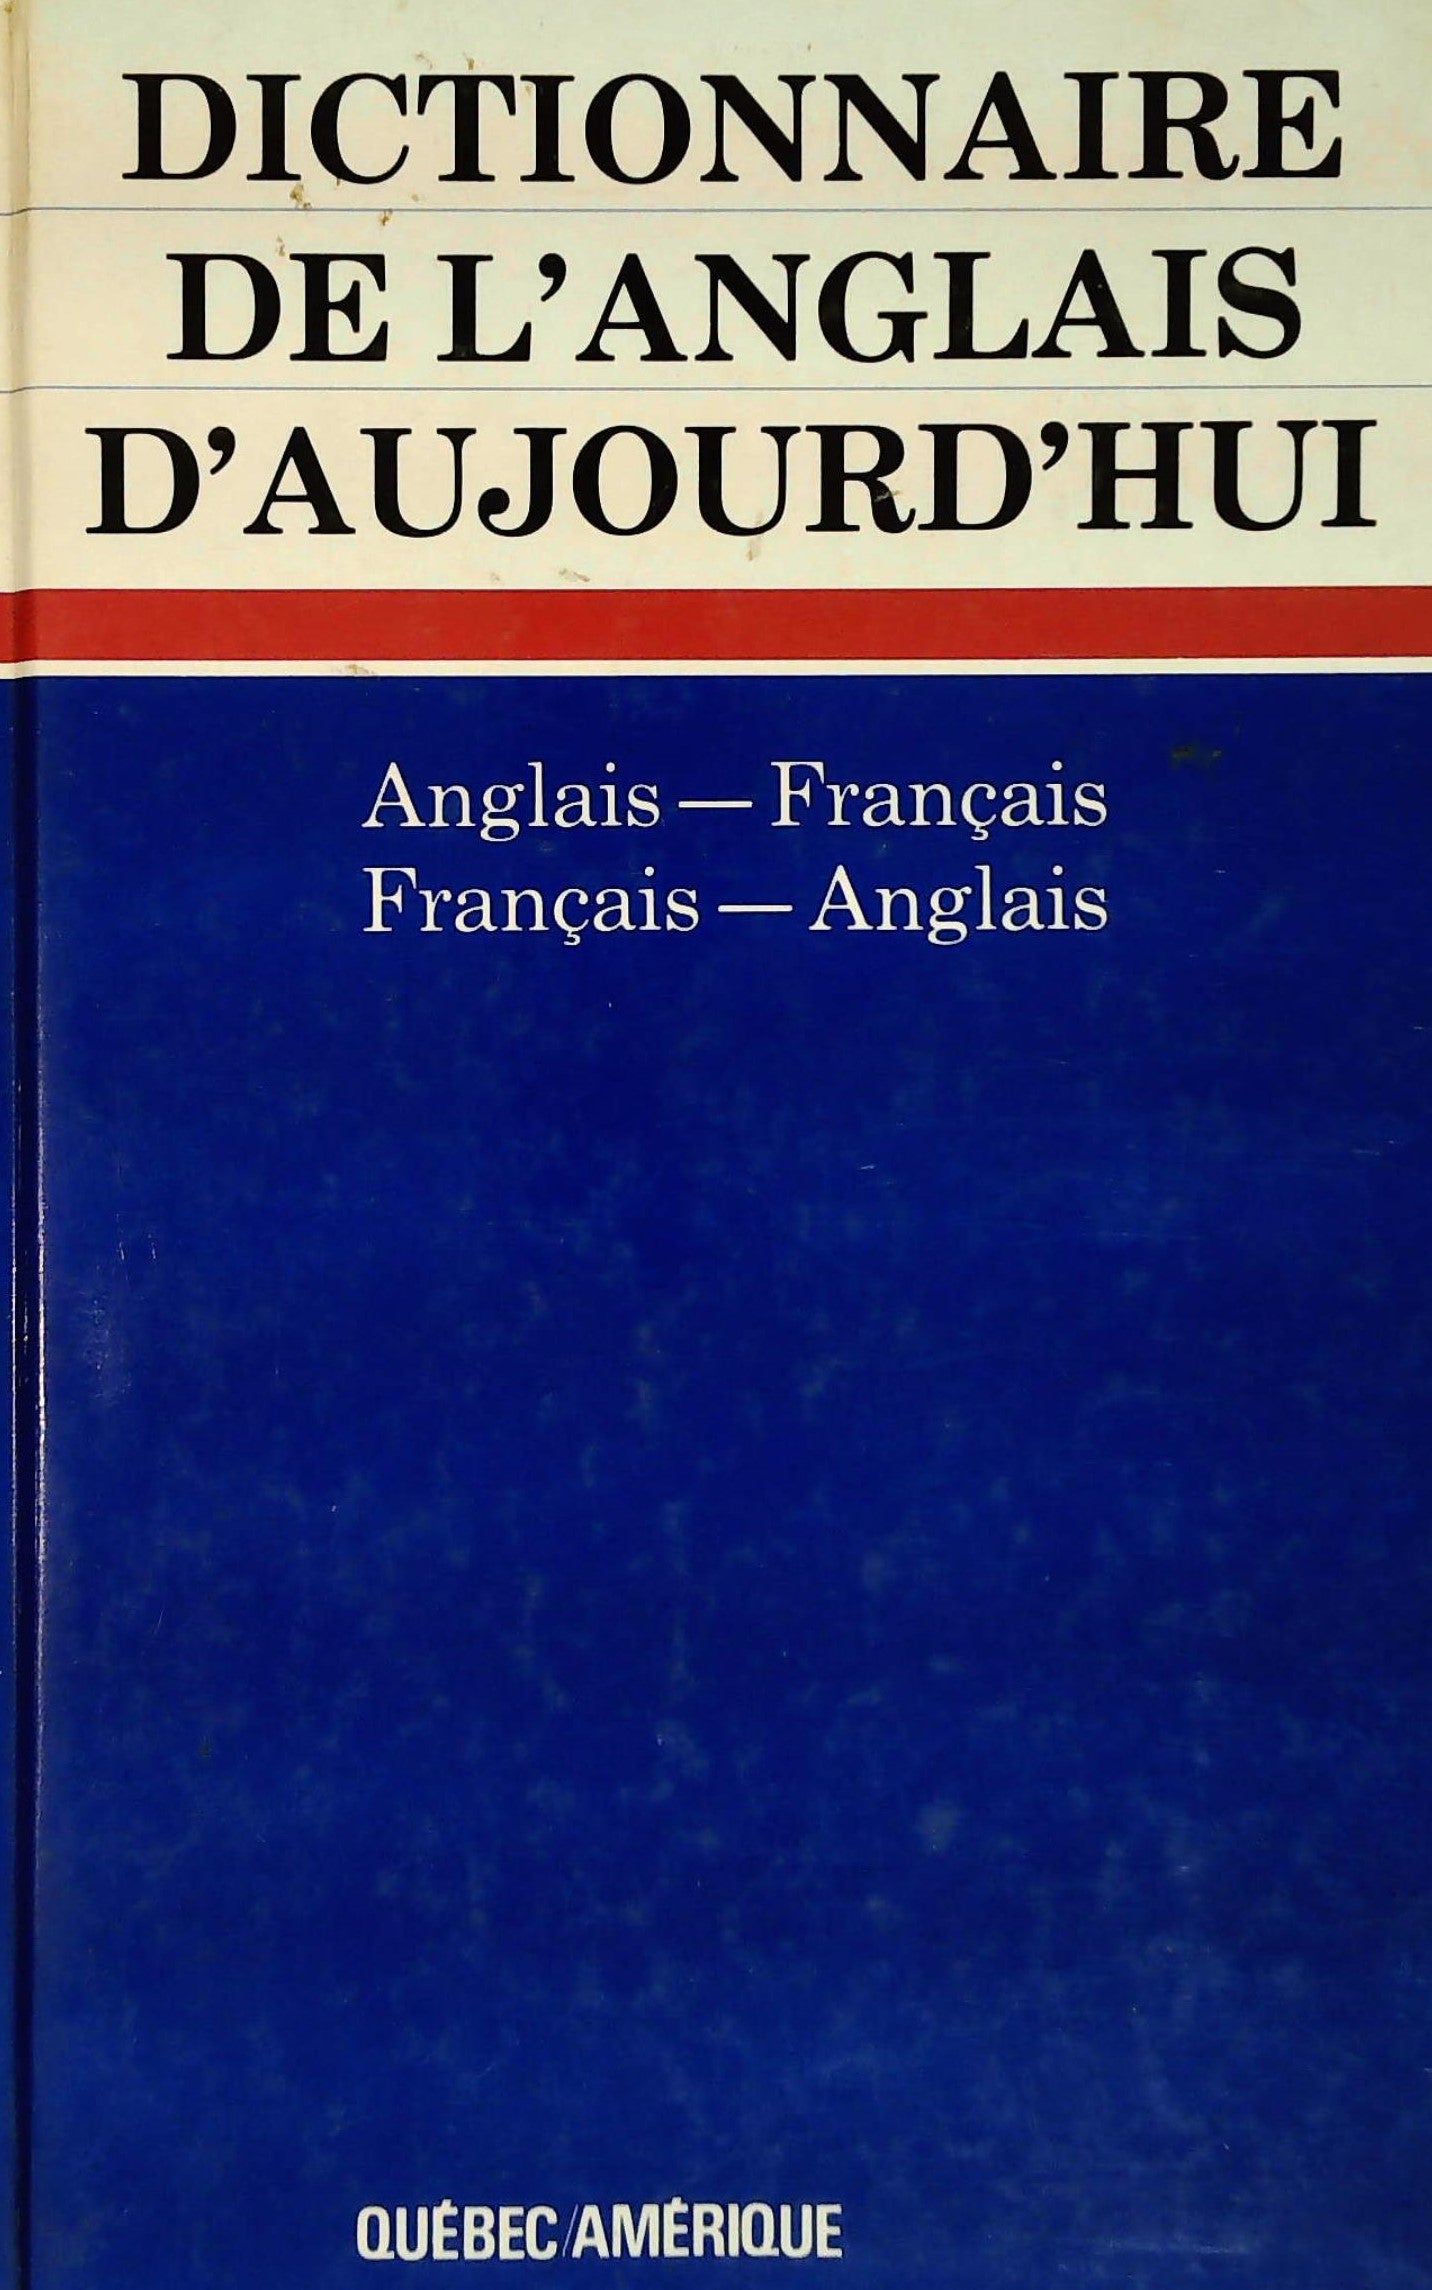 Livre ISBN 2890371425 Dictionnaire de l'anglais d'aujourd'hui: Anglais-français, français-anglais